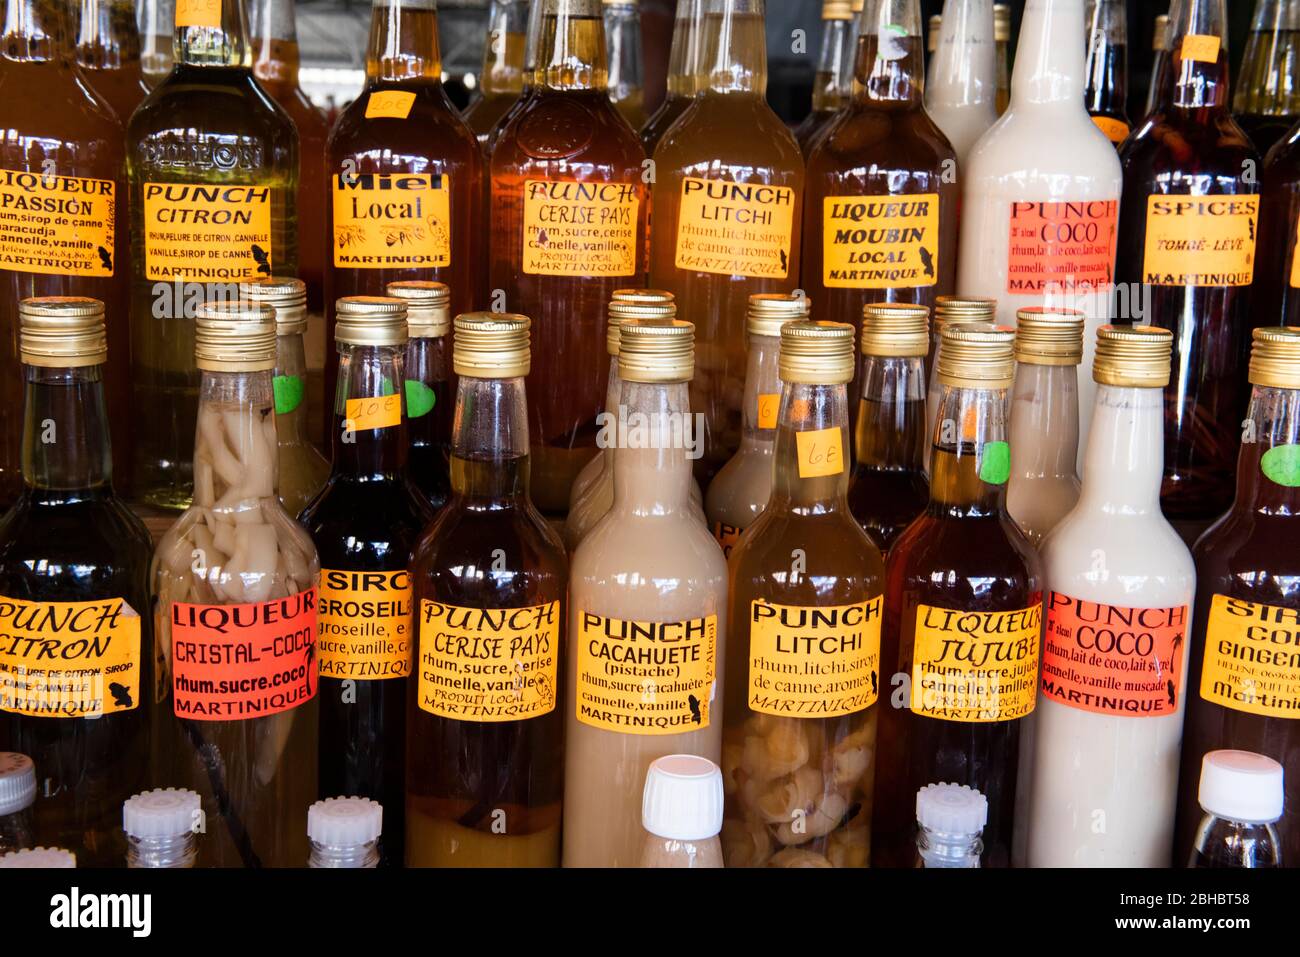 Caribbean, Lesser Antilles, Martinique. Local market, flavored liquor. Stock Photo